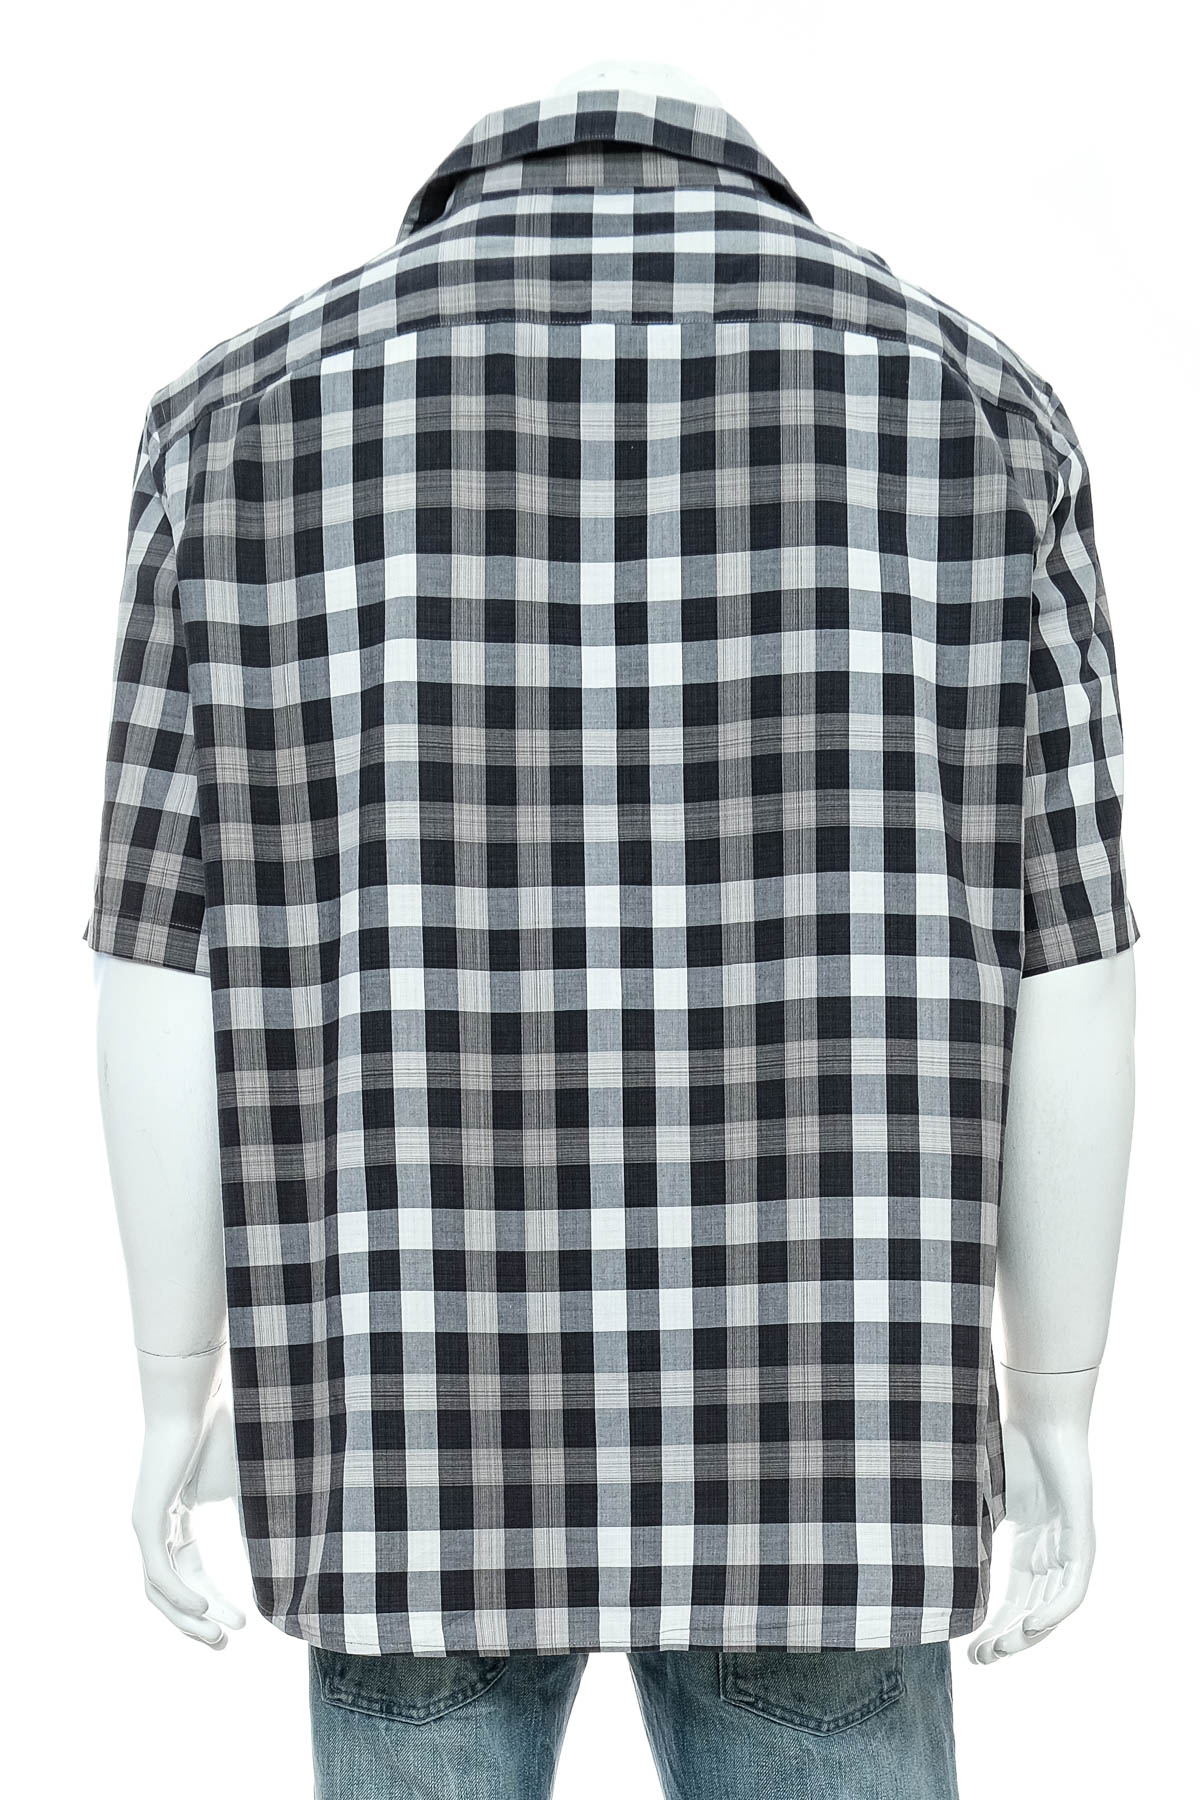 Ανδρικό πουκάμισο - Claiborne - 1